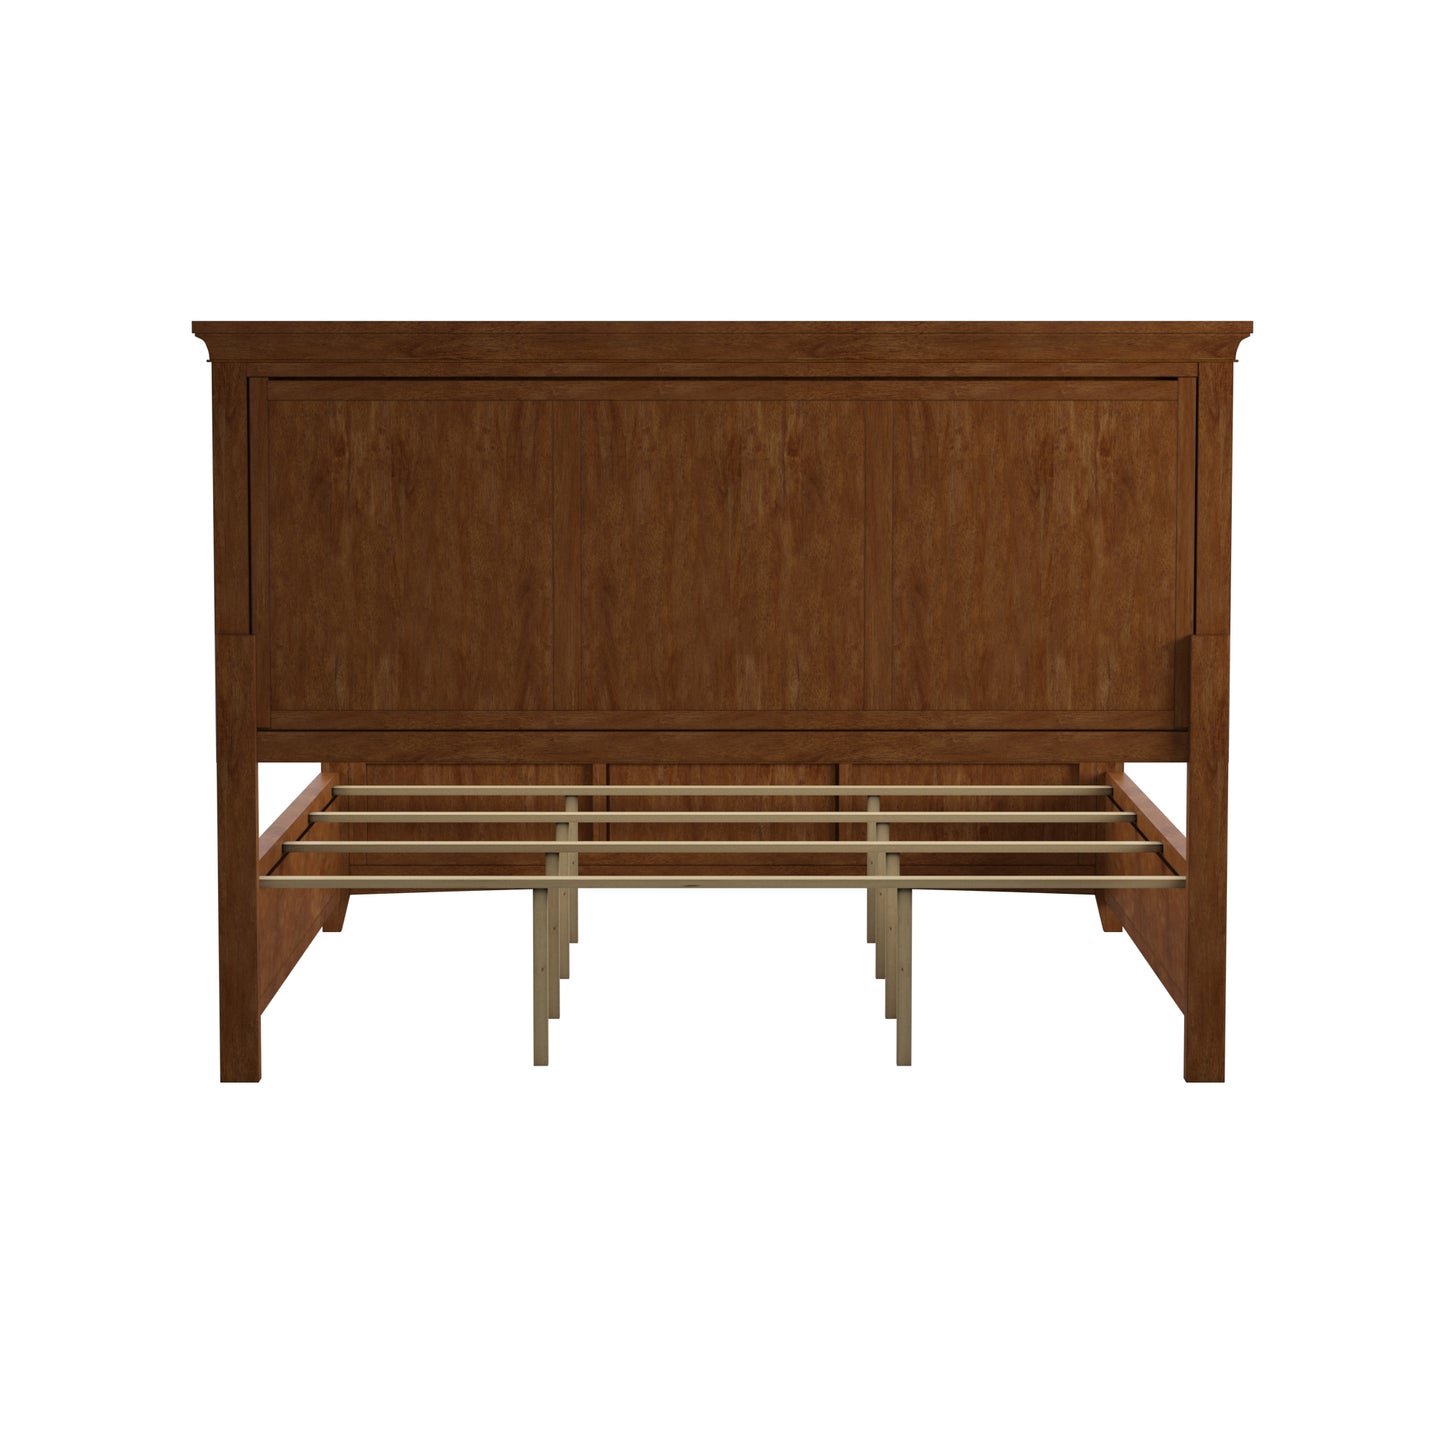 Wood Panel Bed - Oak Finish, King Size